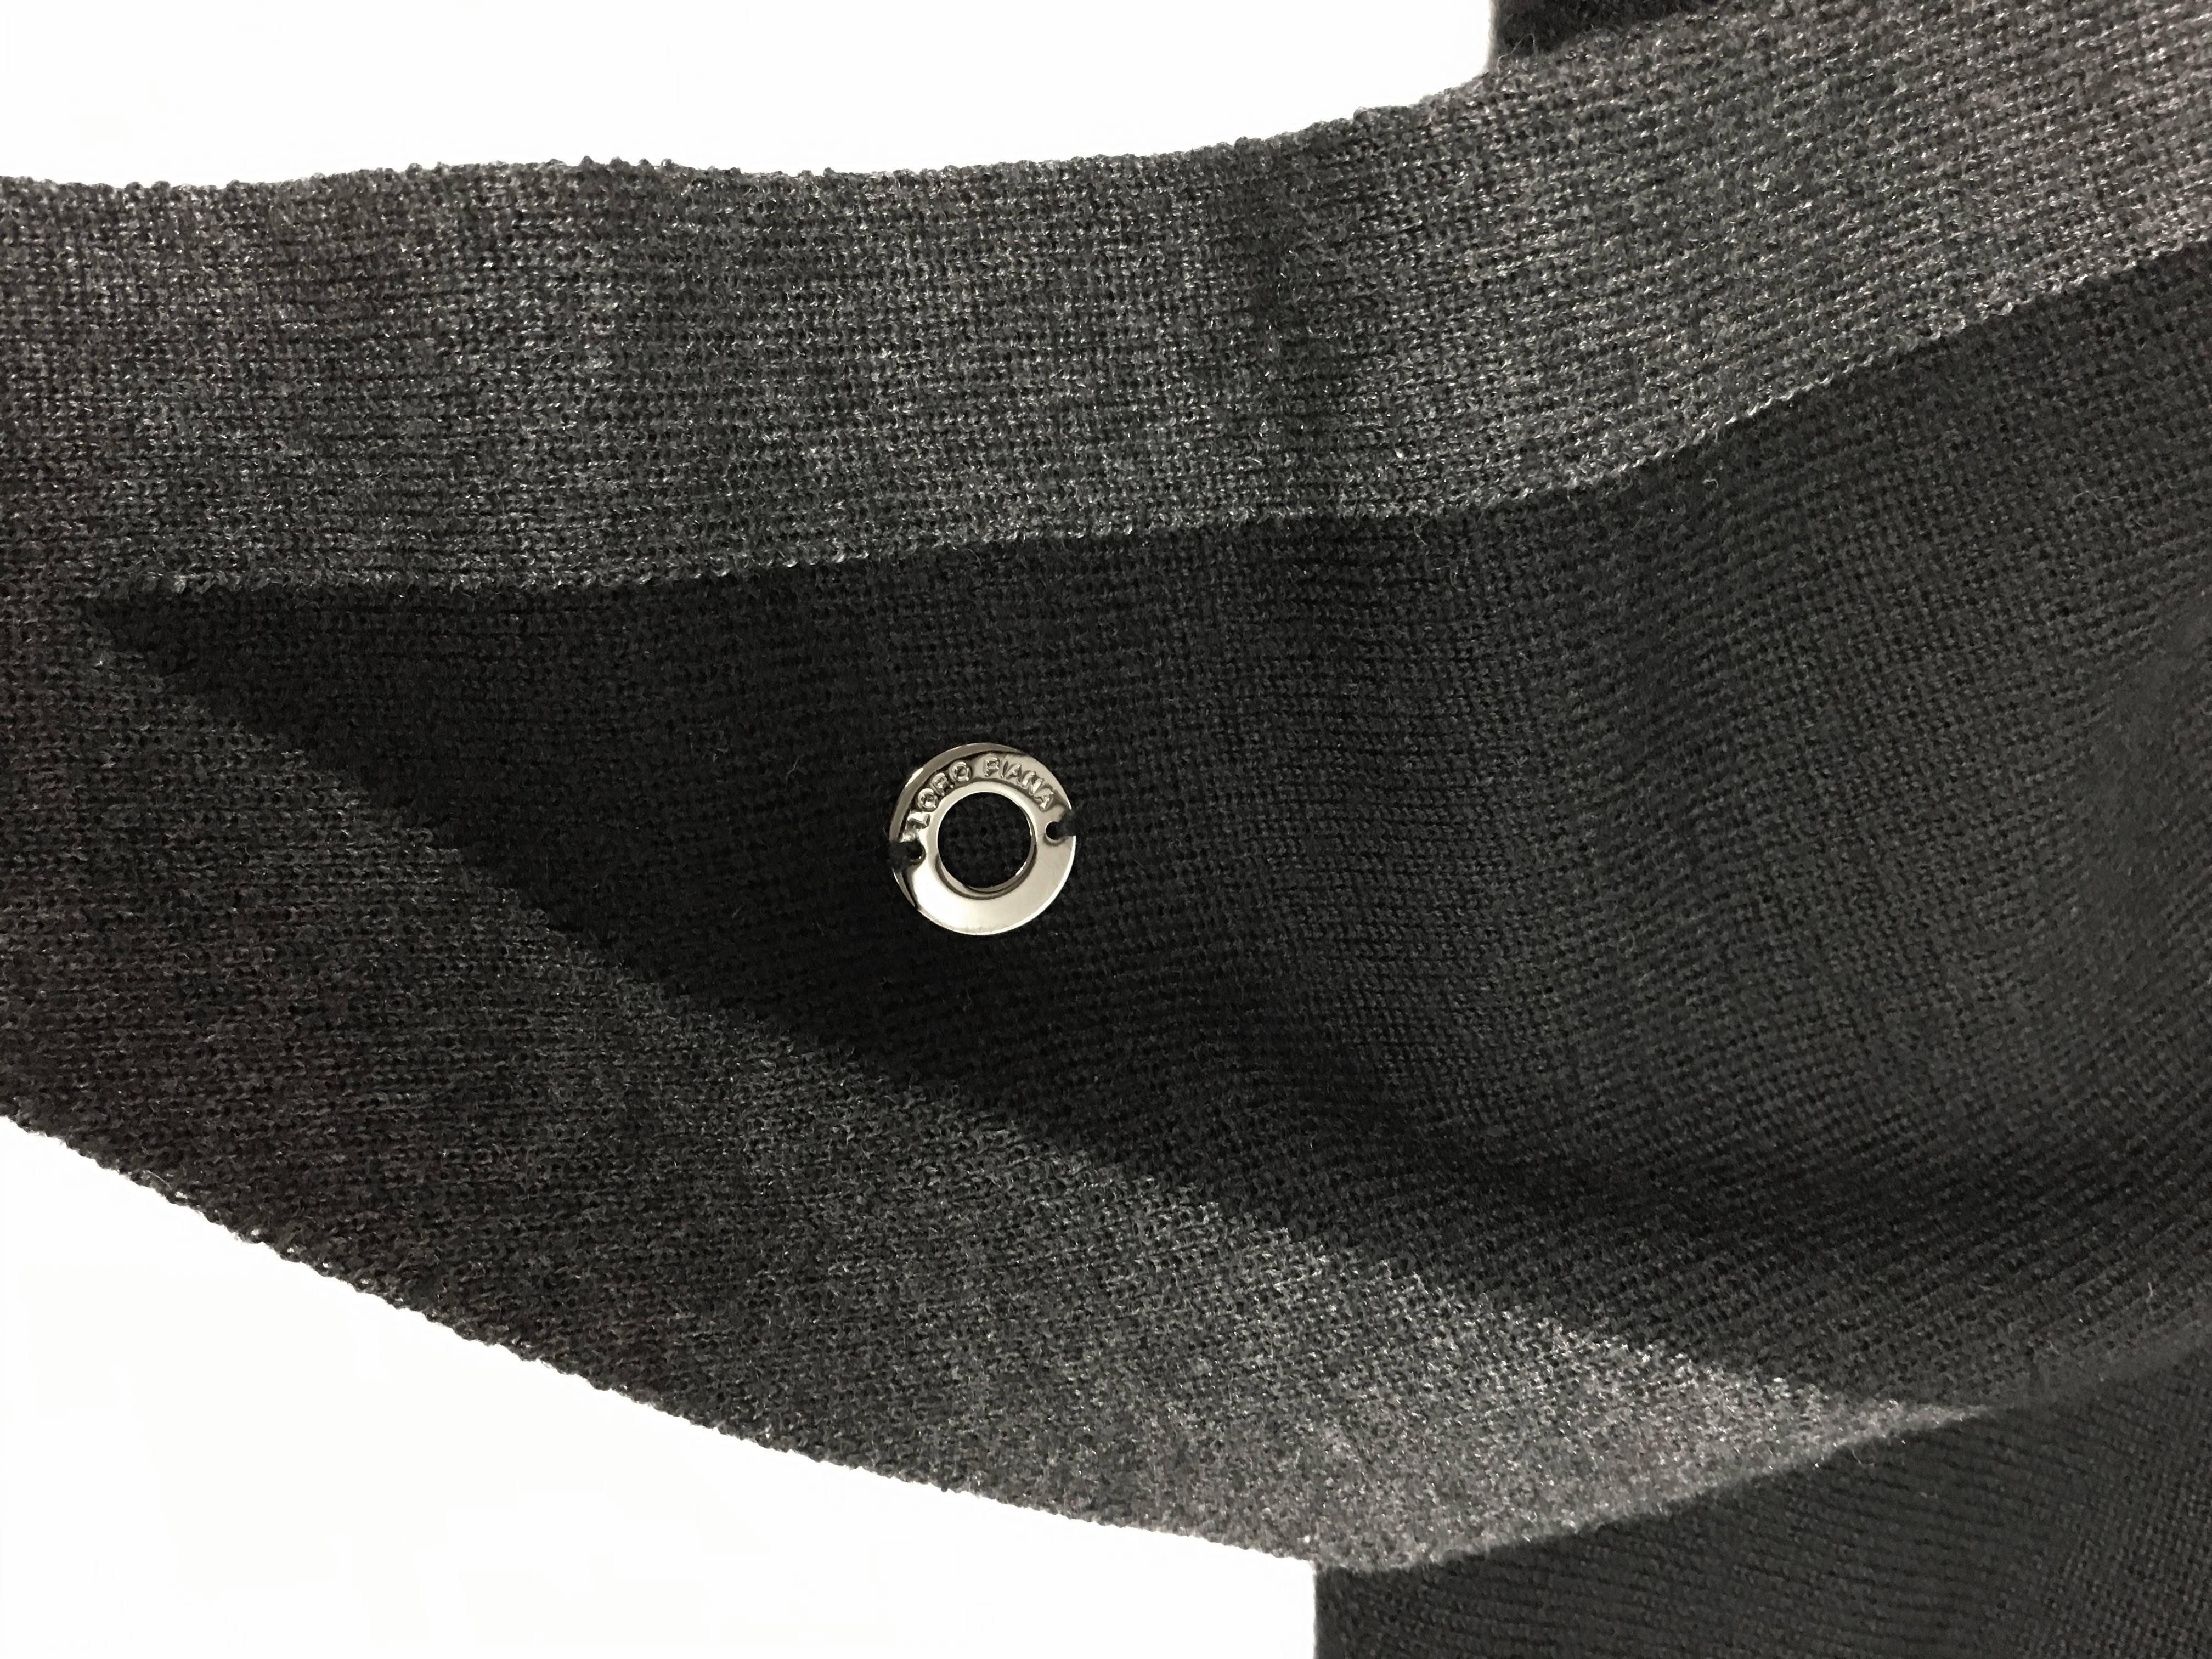 Loro Piana Scialle Twice Golden Knit Triangle Shawl
Color: Black/Gray
Retail: $1,075.00
Loro Piana cashmere-blend shawl.
Triangular: 90